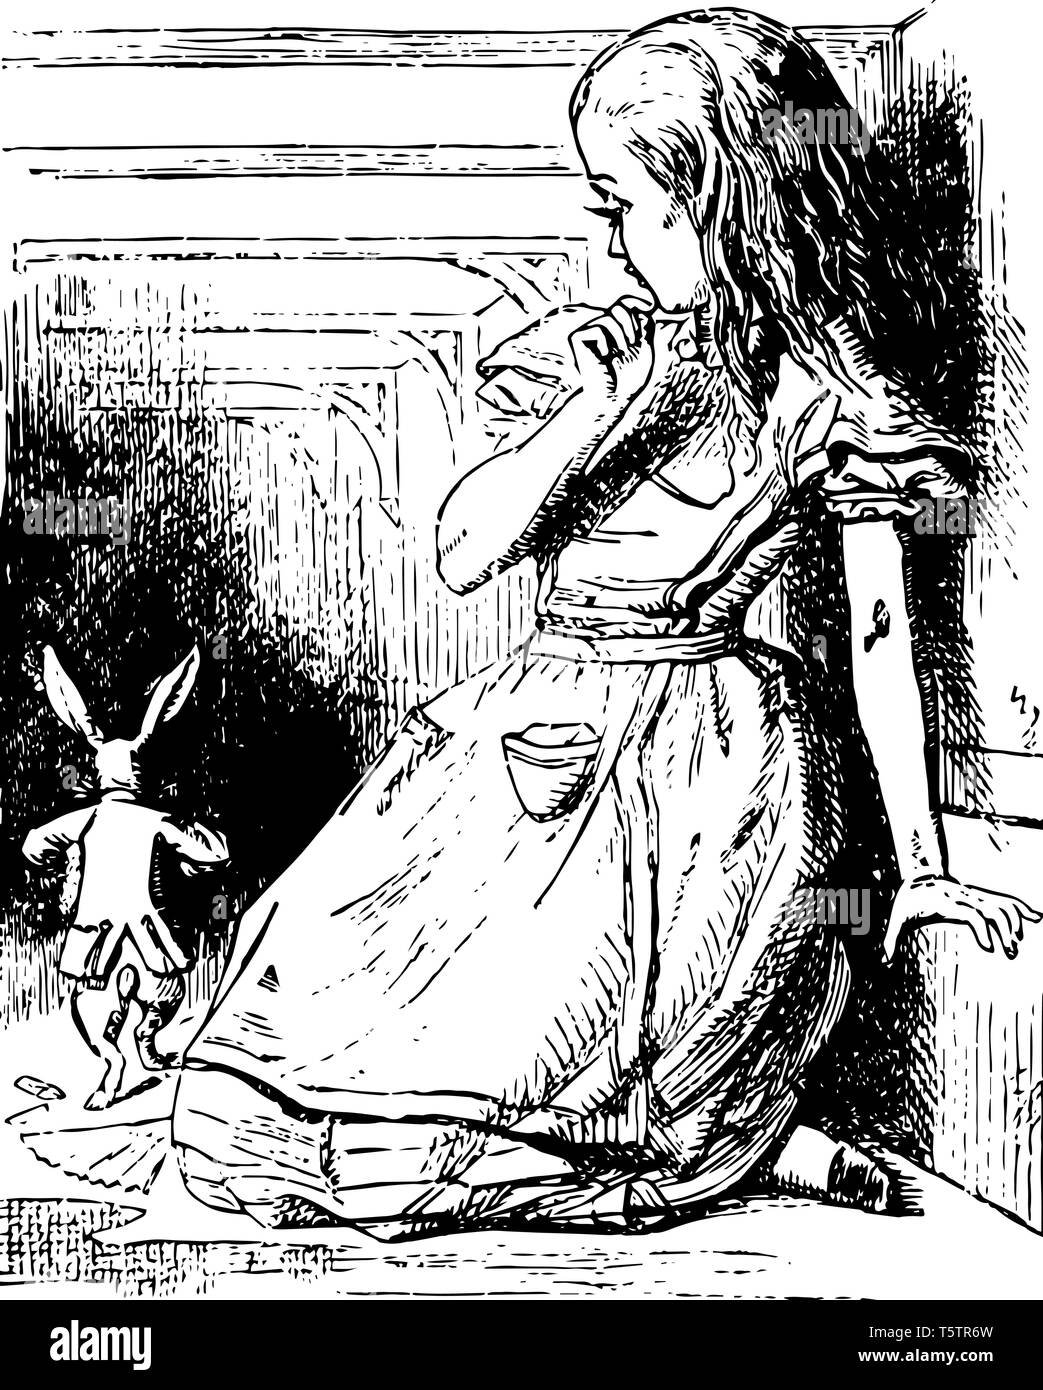 Alice Uhren das weiße Kaninchen laufen Weg diese Szene zeigt ein kleines Mädchen an weg laufen Kaninchen vintage Strichzeichnung oder Gravur Abbildung: Suchen Stock Vektor